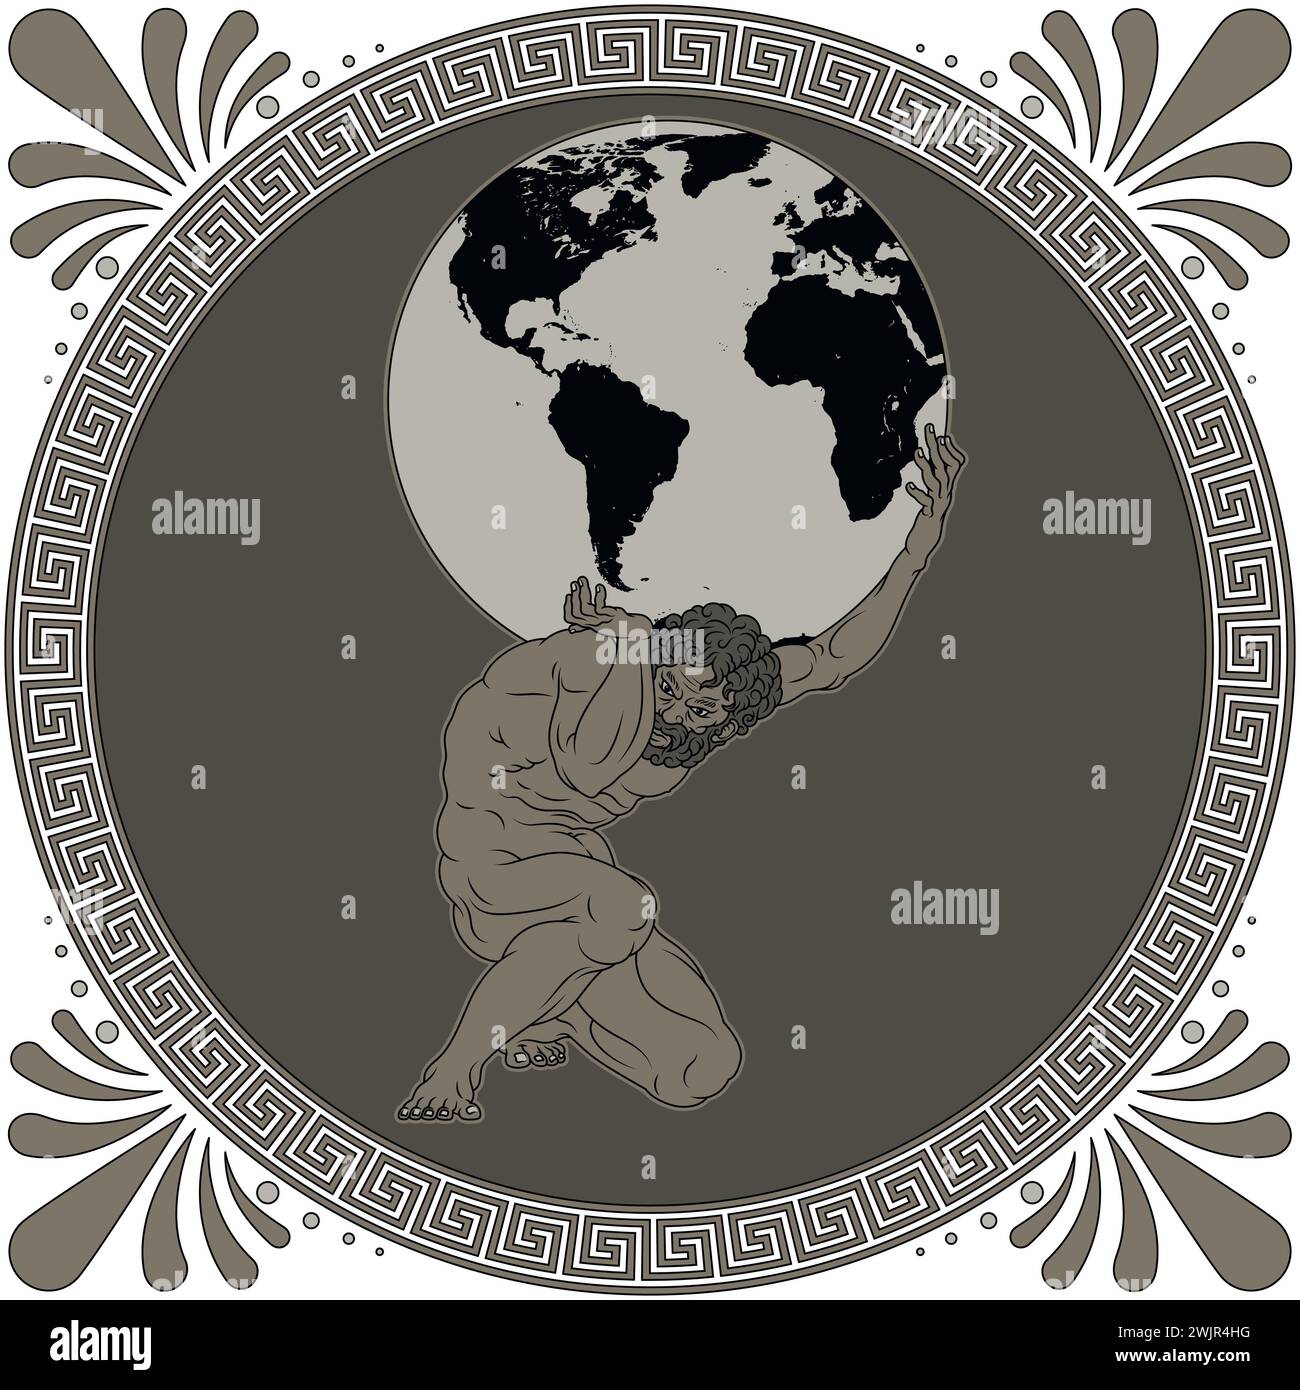 Conception vectorielle de Titan Atlas tenant la planète Terre, art amphore de Grèce antique, mythologie grecque titan Illustration de Vecteur